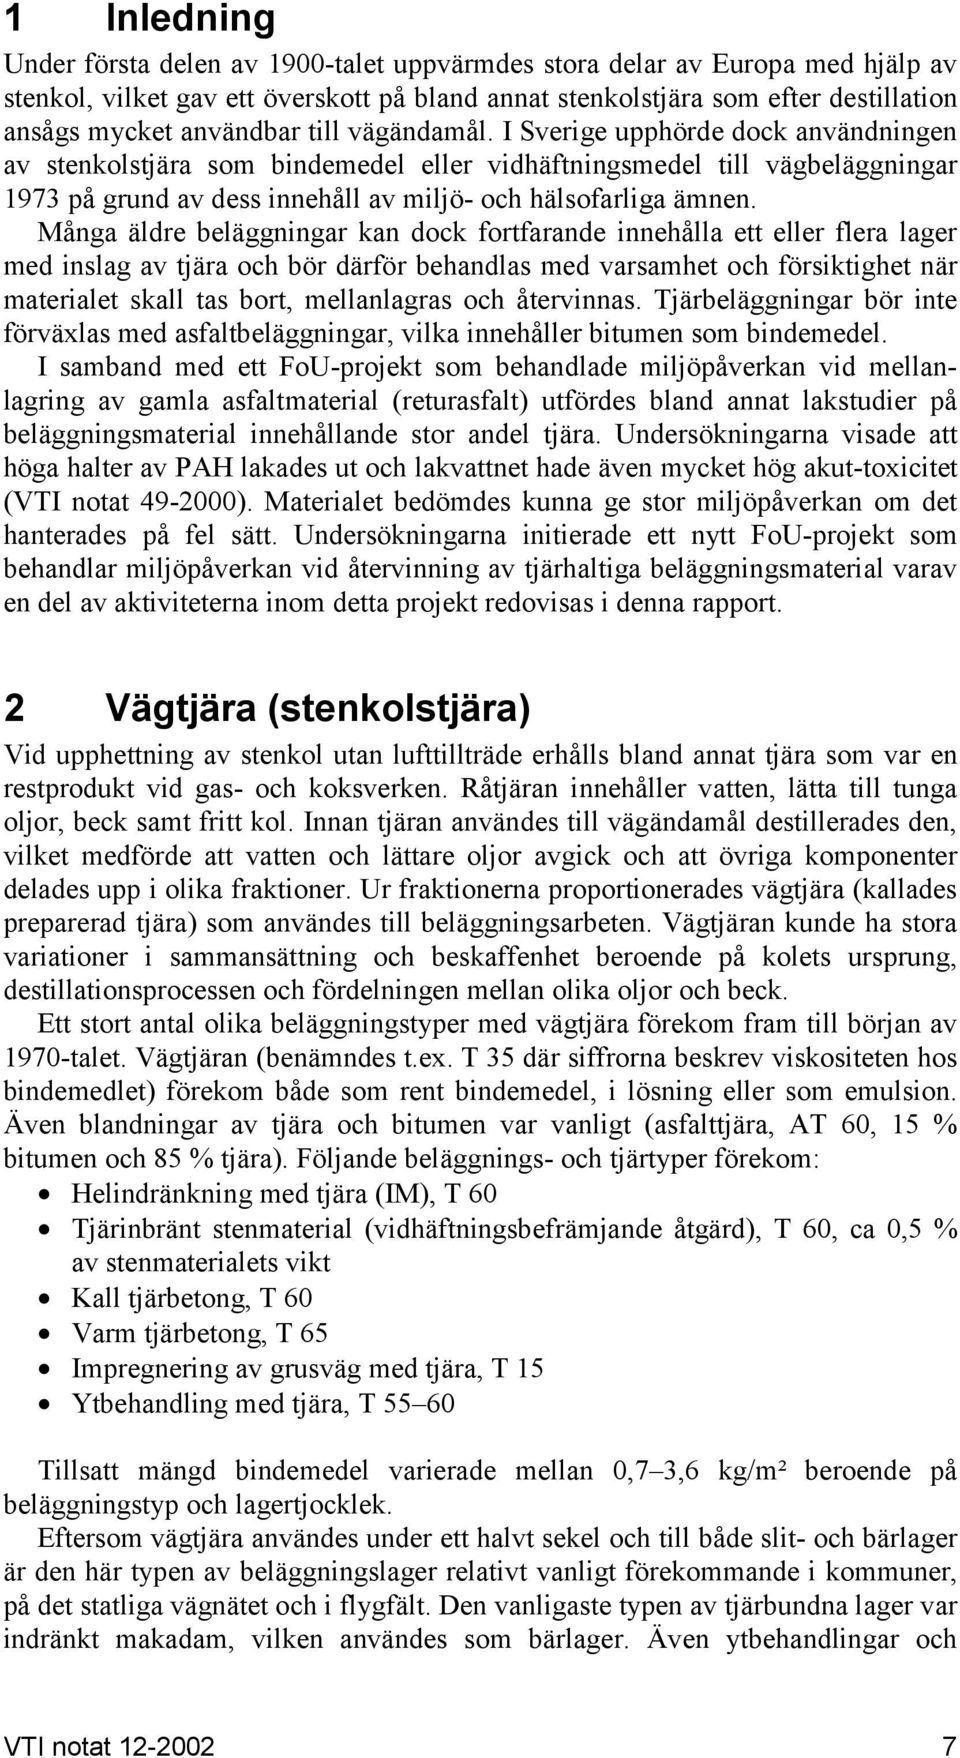 I Sverige upphörde dock användningen av stenkolstjära som bindemedel eller vidhäftningsmedel till vägbeläggningar 1973 på grund av dess innehåll av miljö- och hälsofarliga ämnen.